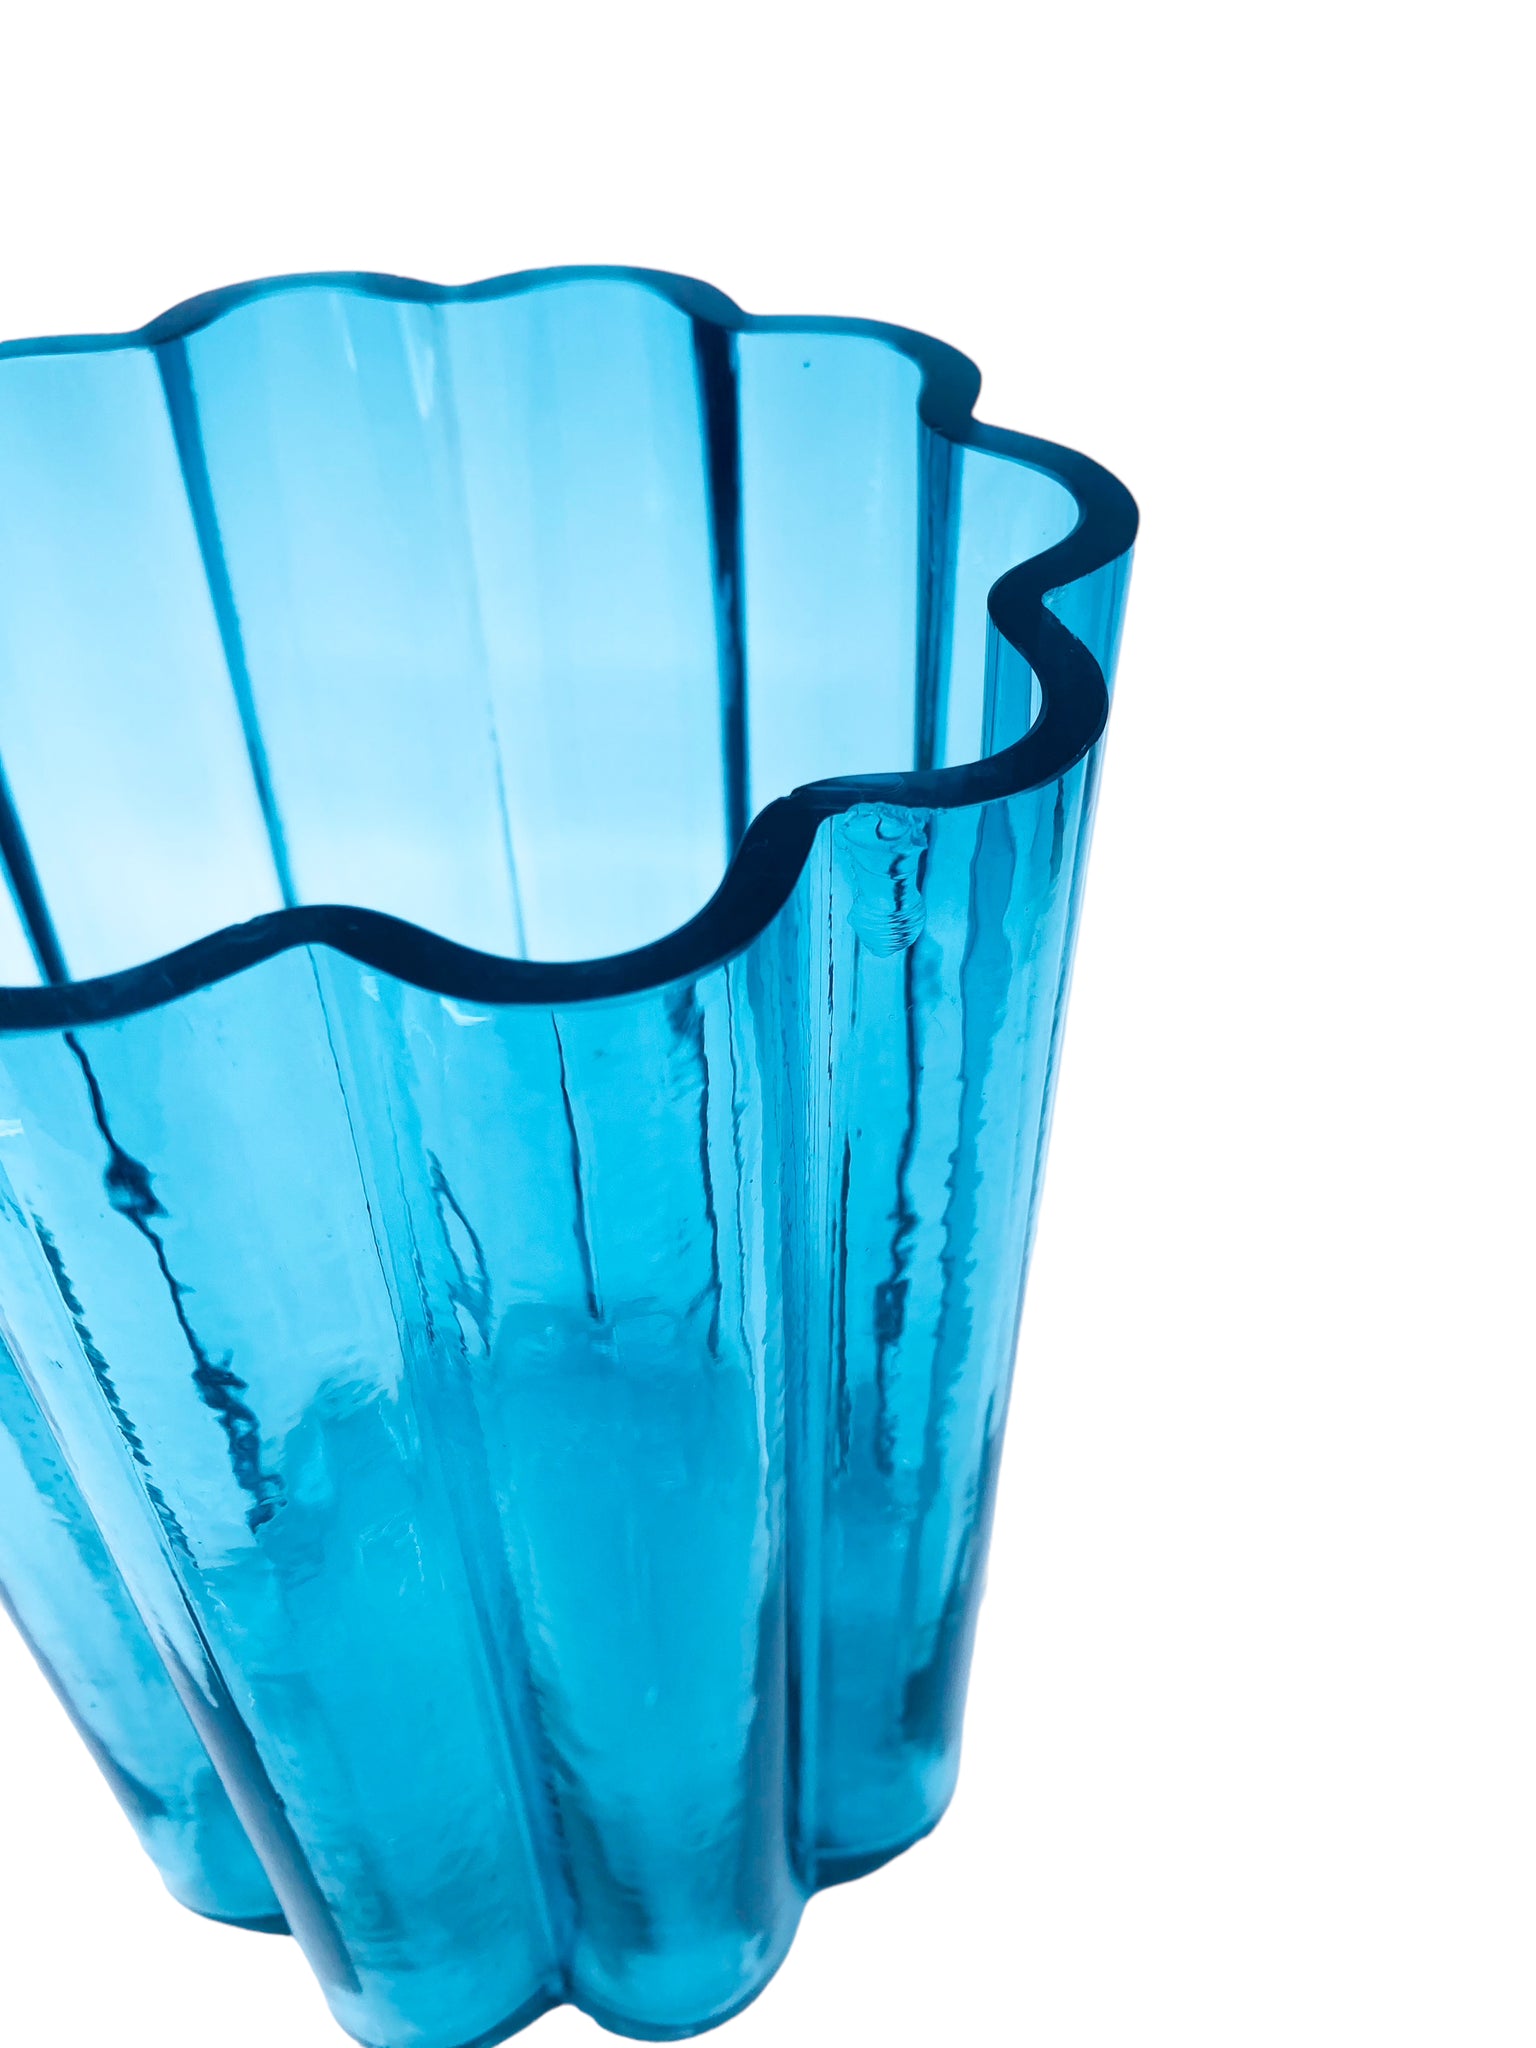 Dansk Ribbed Glass Large Vase by Jens Quistgaard